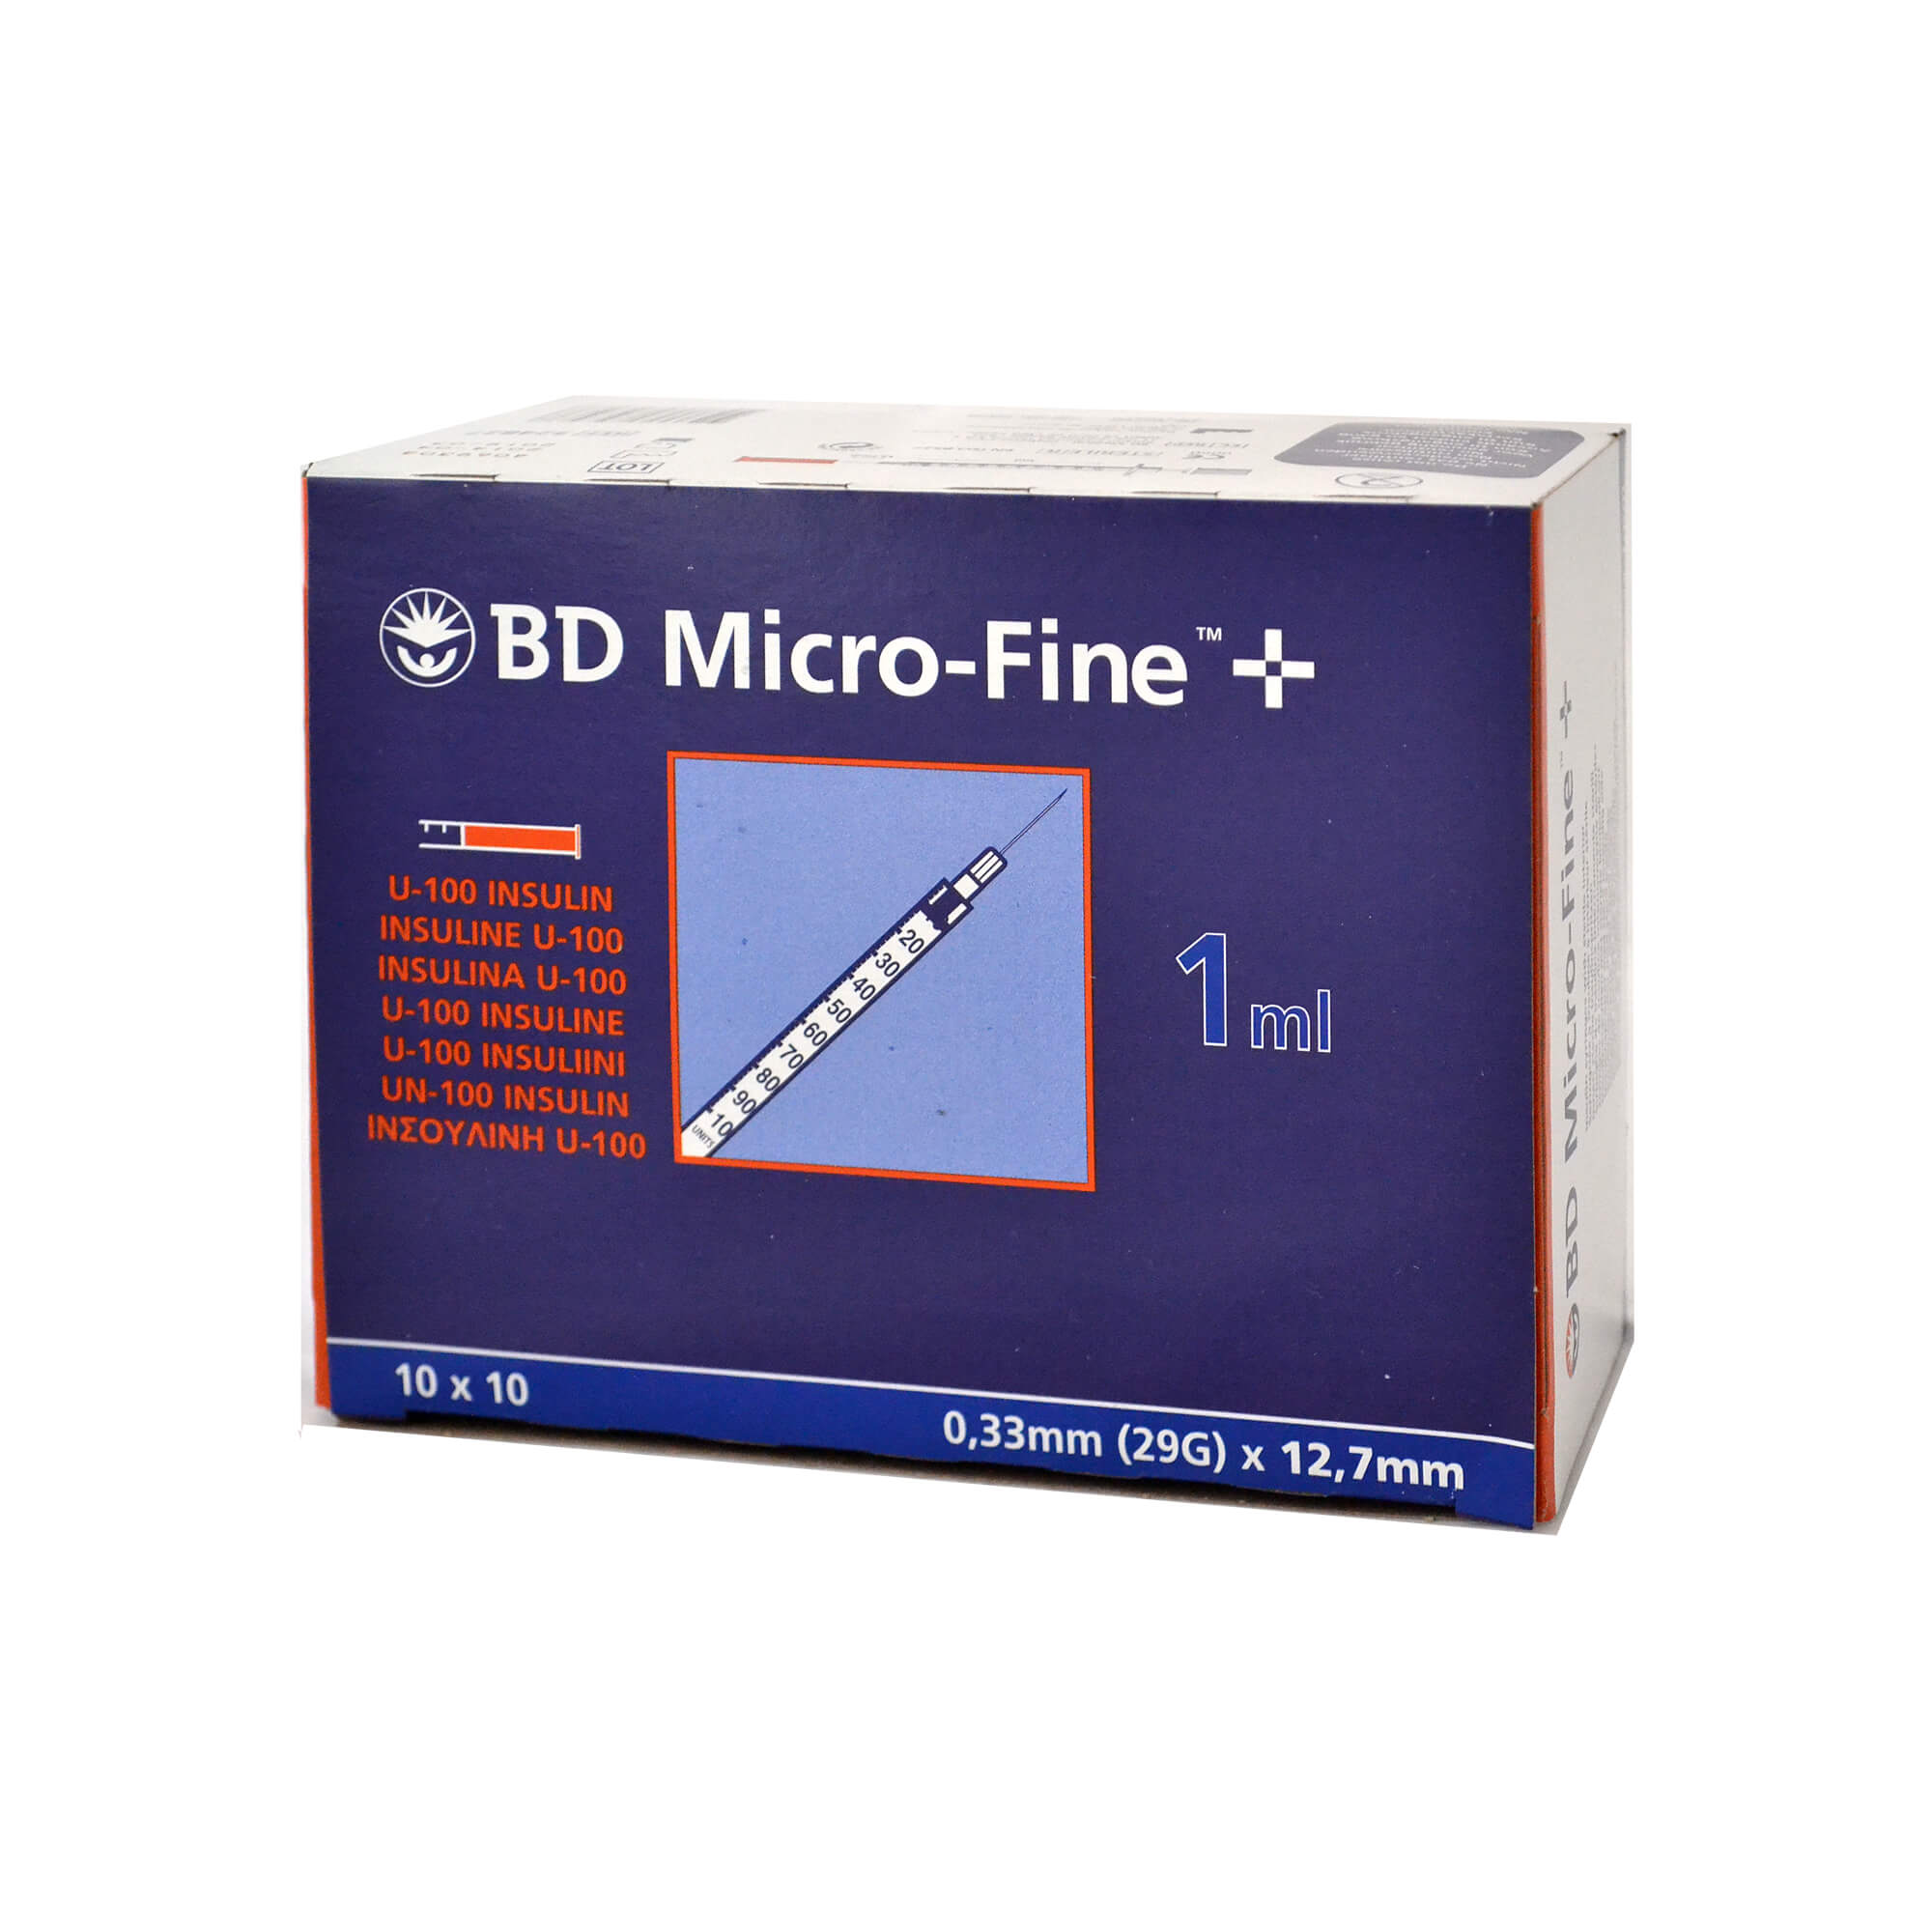 BD Micro-Fine+ Insulinspritzen 1,0 ml für U100-Insuline, Nadellänge: 12,7 mm, Nadelstärke: 0,33 mm.